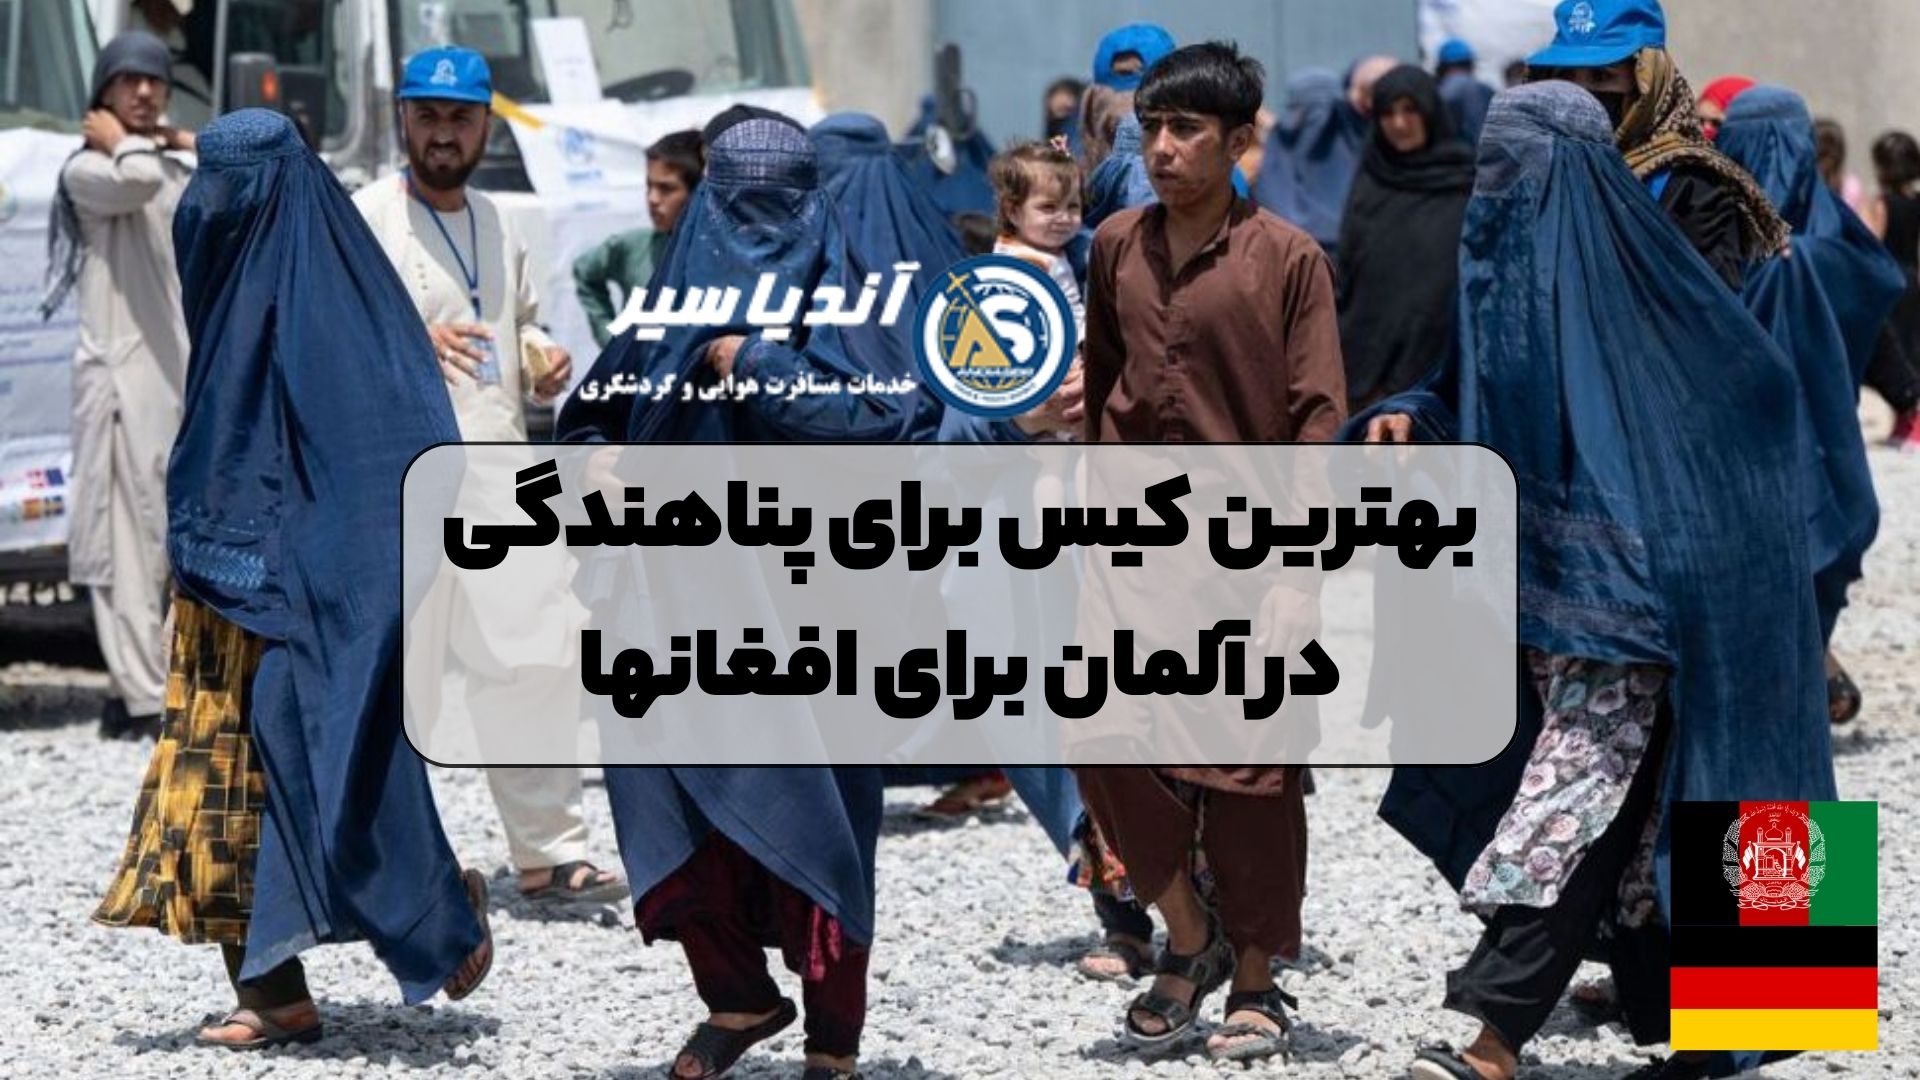 بهترین کیس برای پناهندگی در آلمان برای افغانها